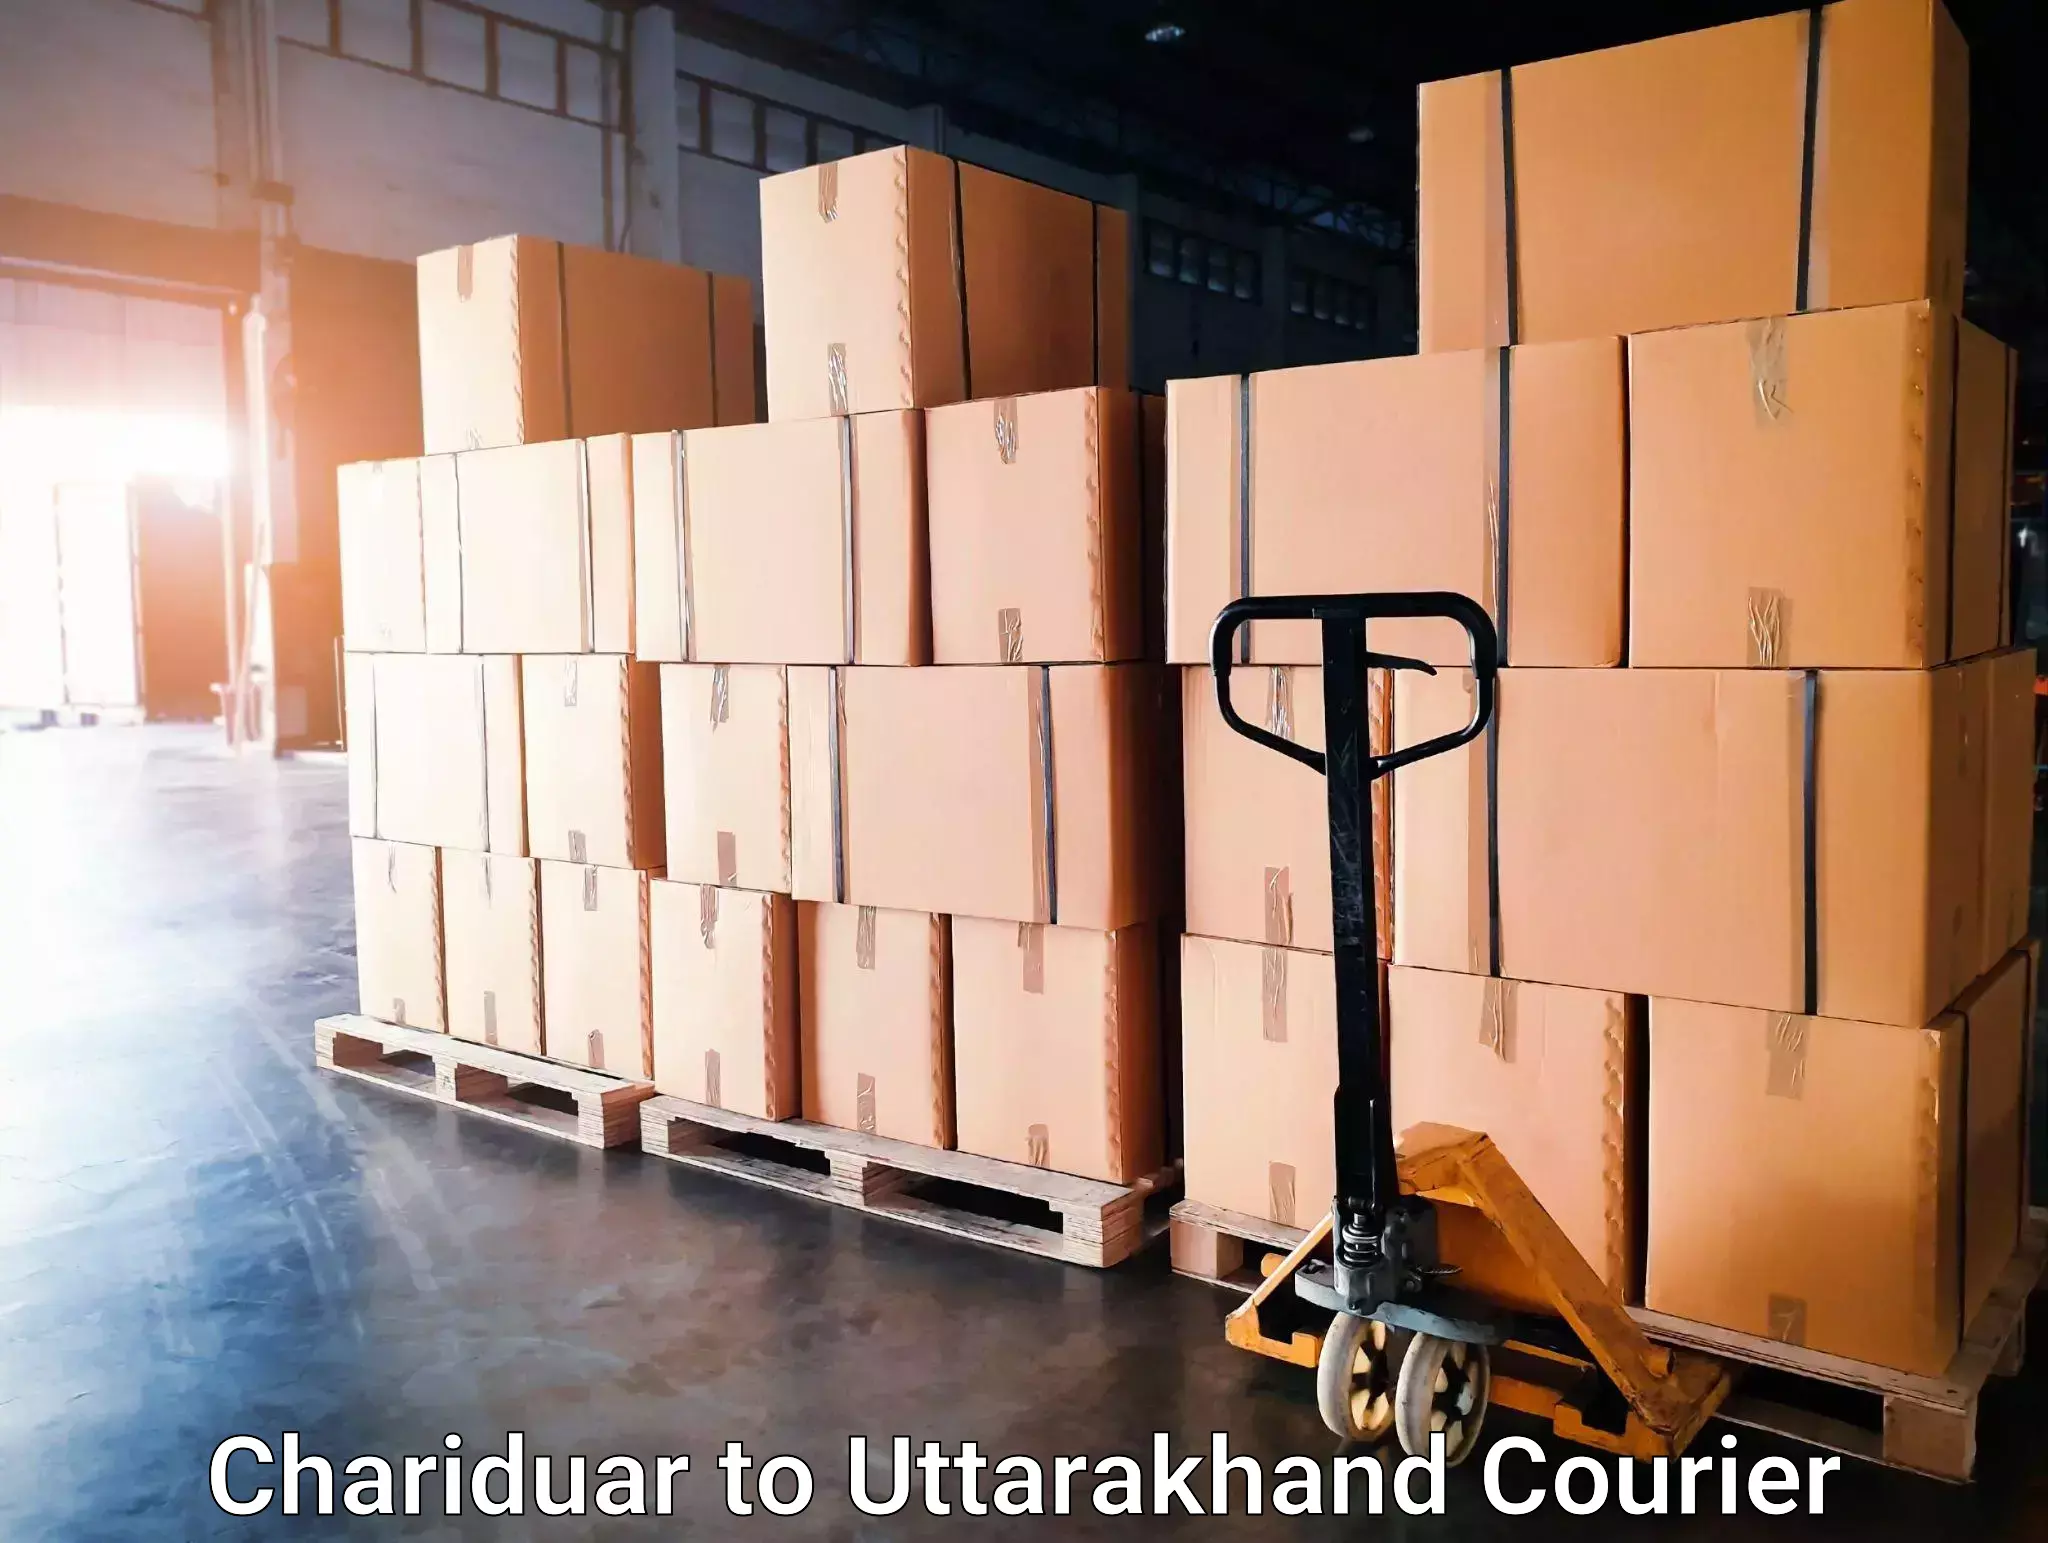 Urgent courier needs Chariduar to Uttarakhand